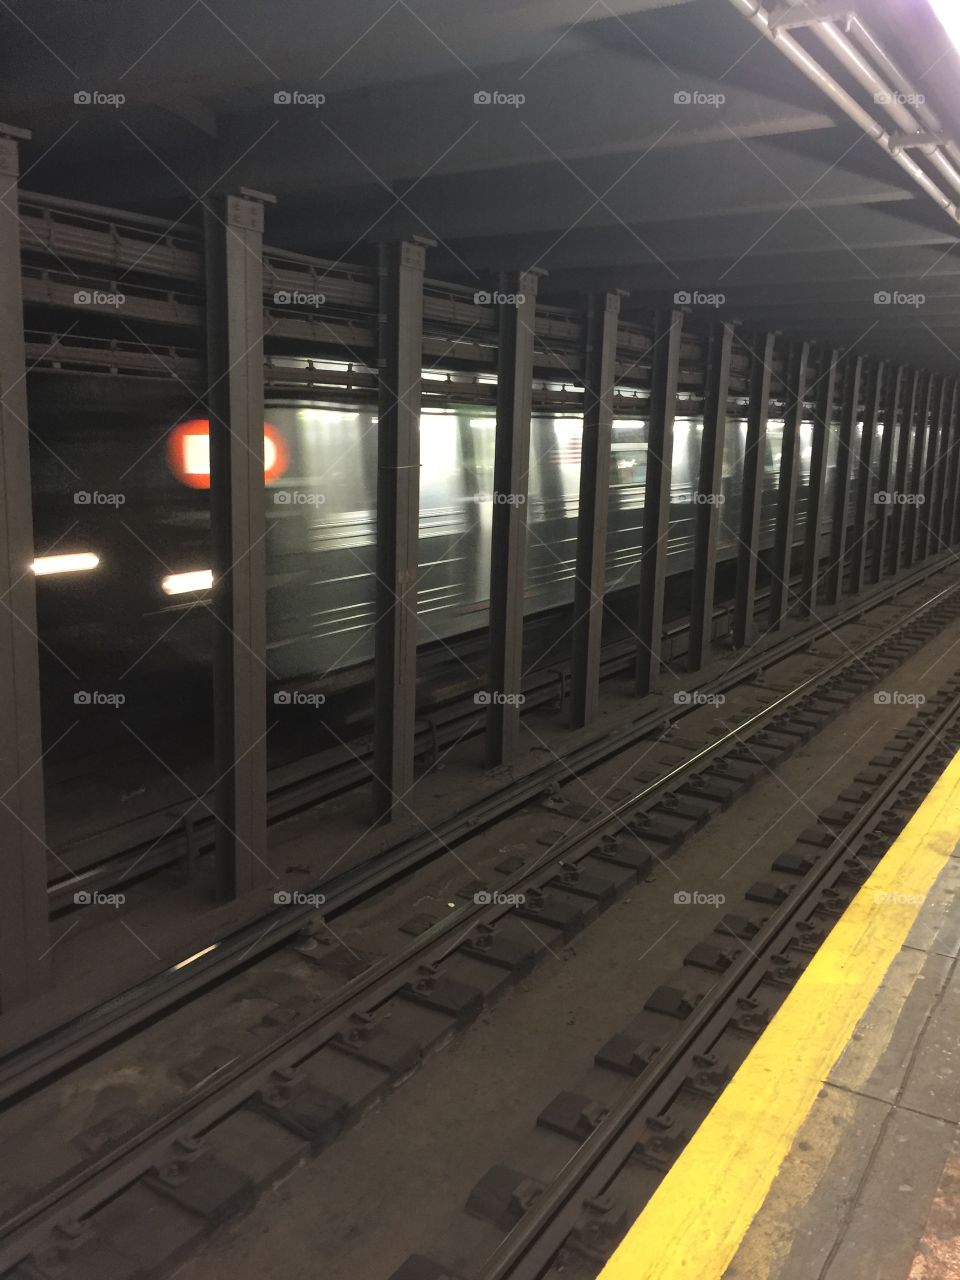 New York City subway 